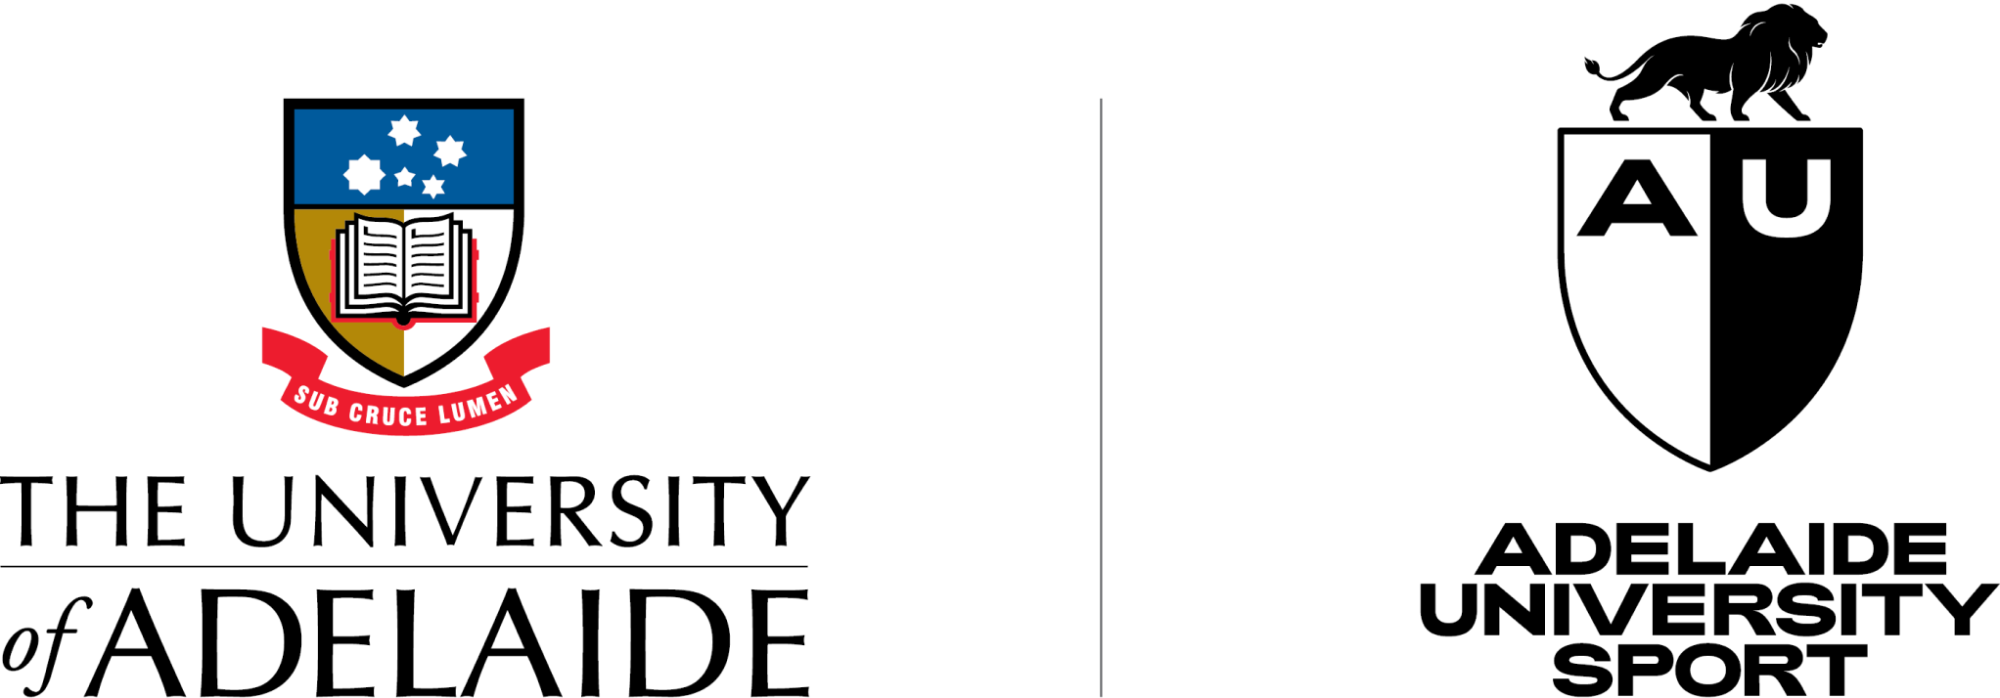 Adelaide University Sport logo